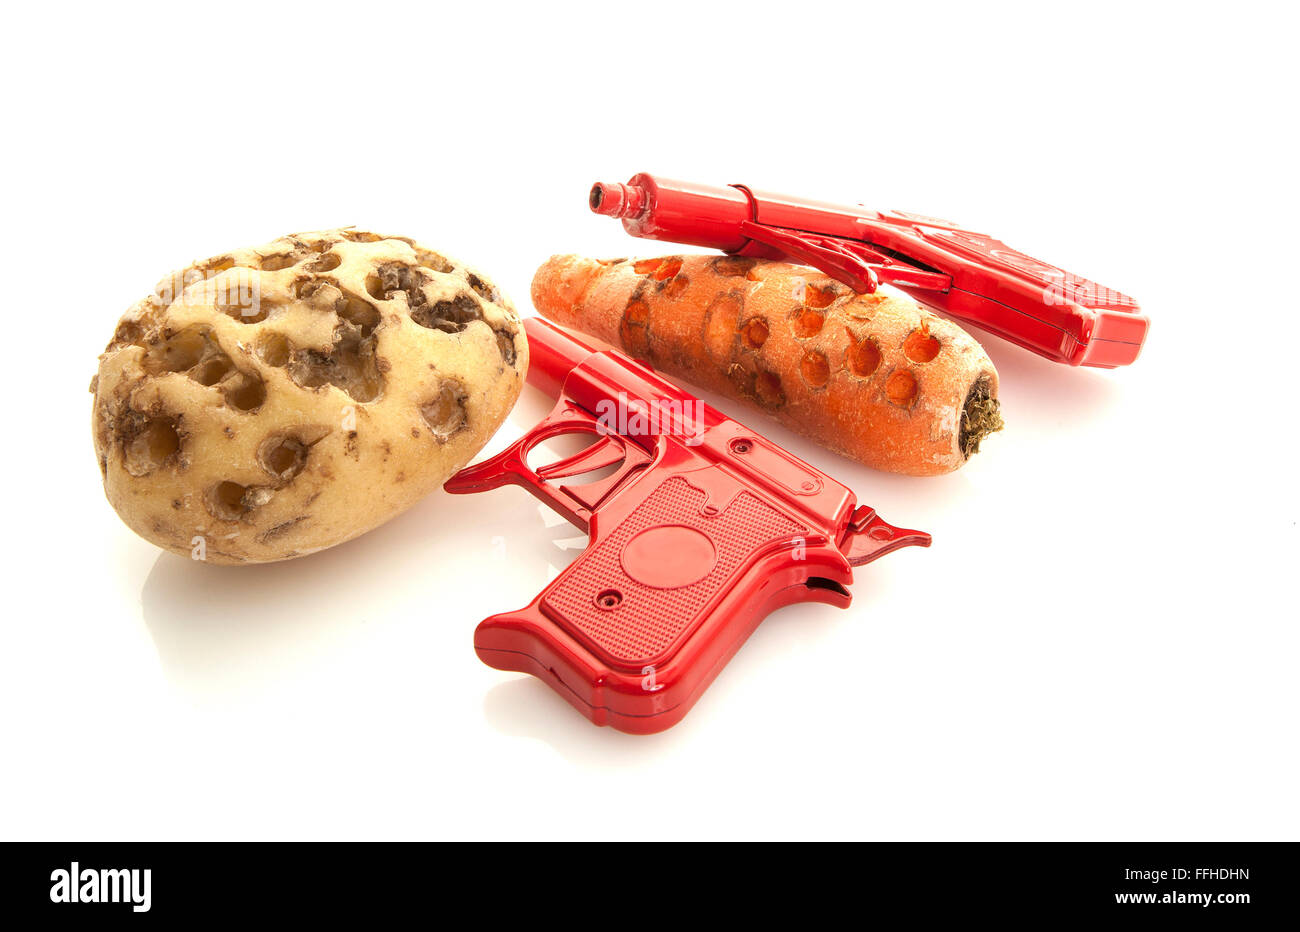 Les jouets de Noël rétro, deux pistolets Spud rouge avec des pommes de terre et de carottes sur fond blanc Banque D'Images